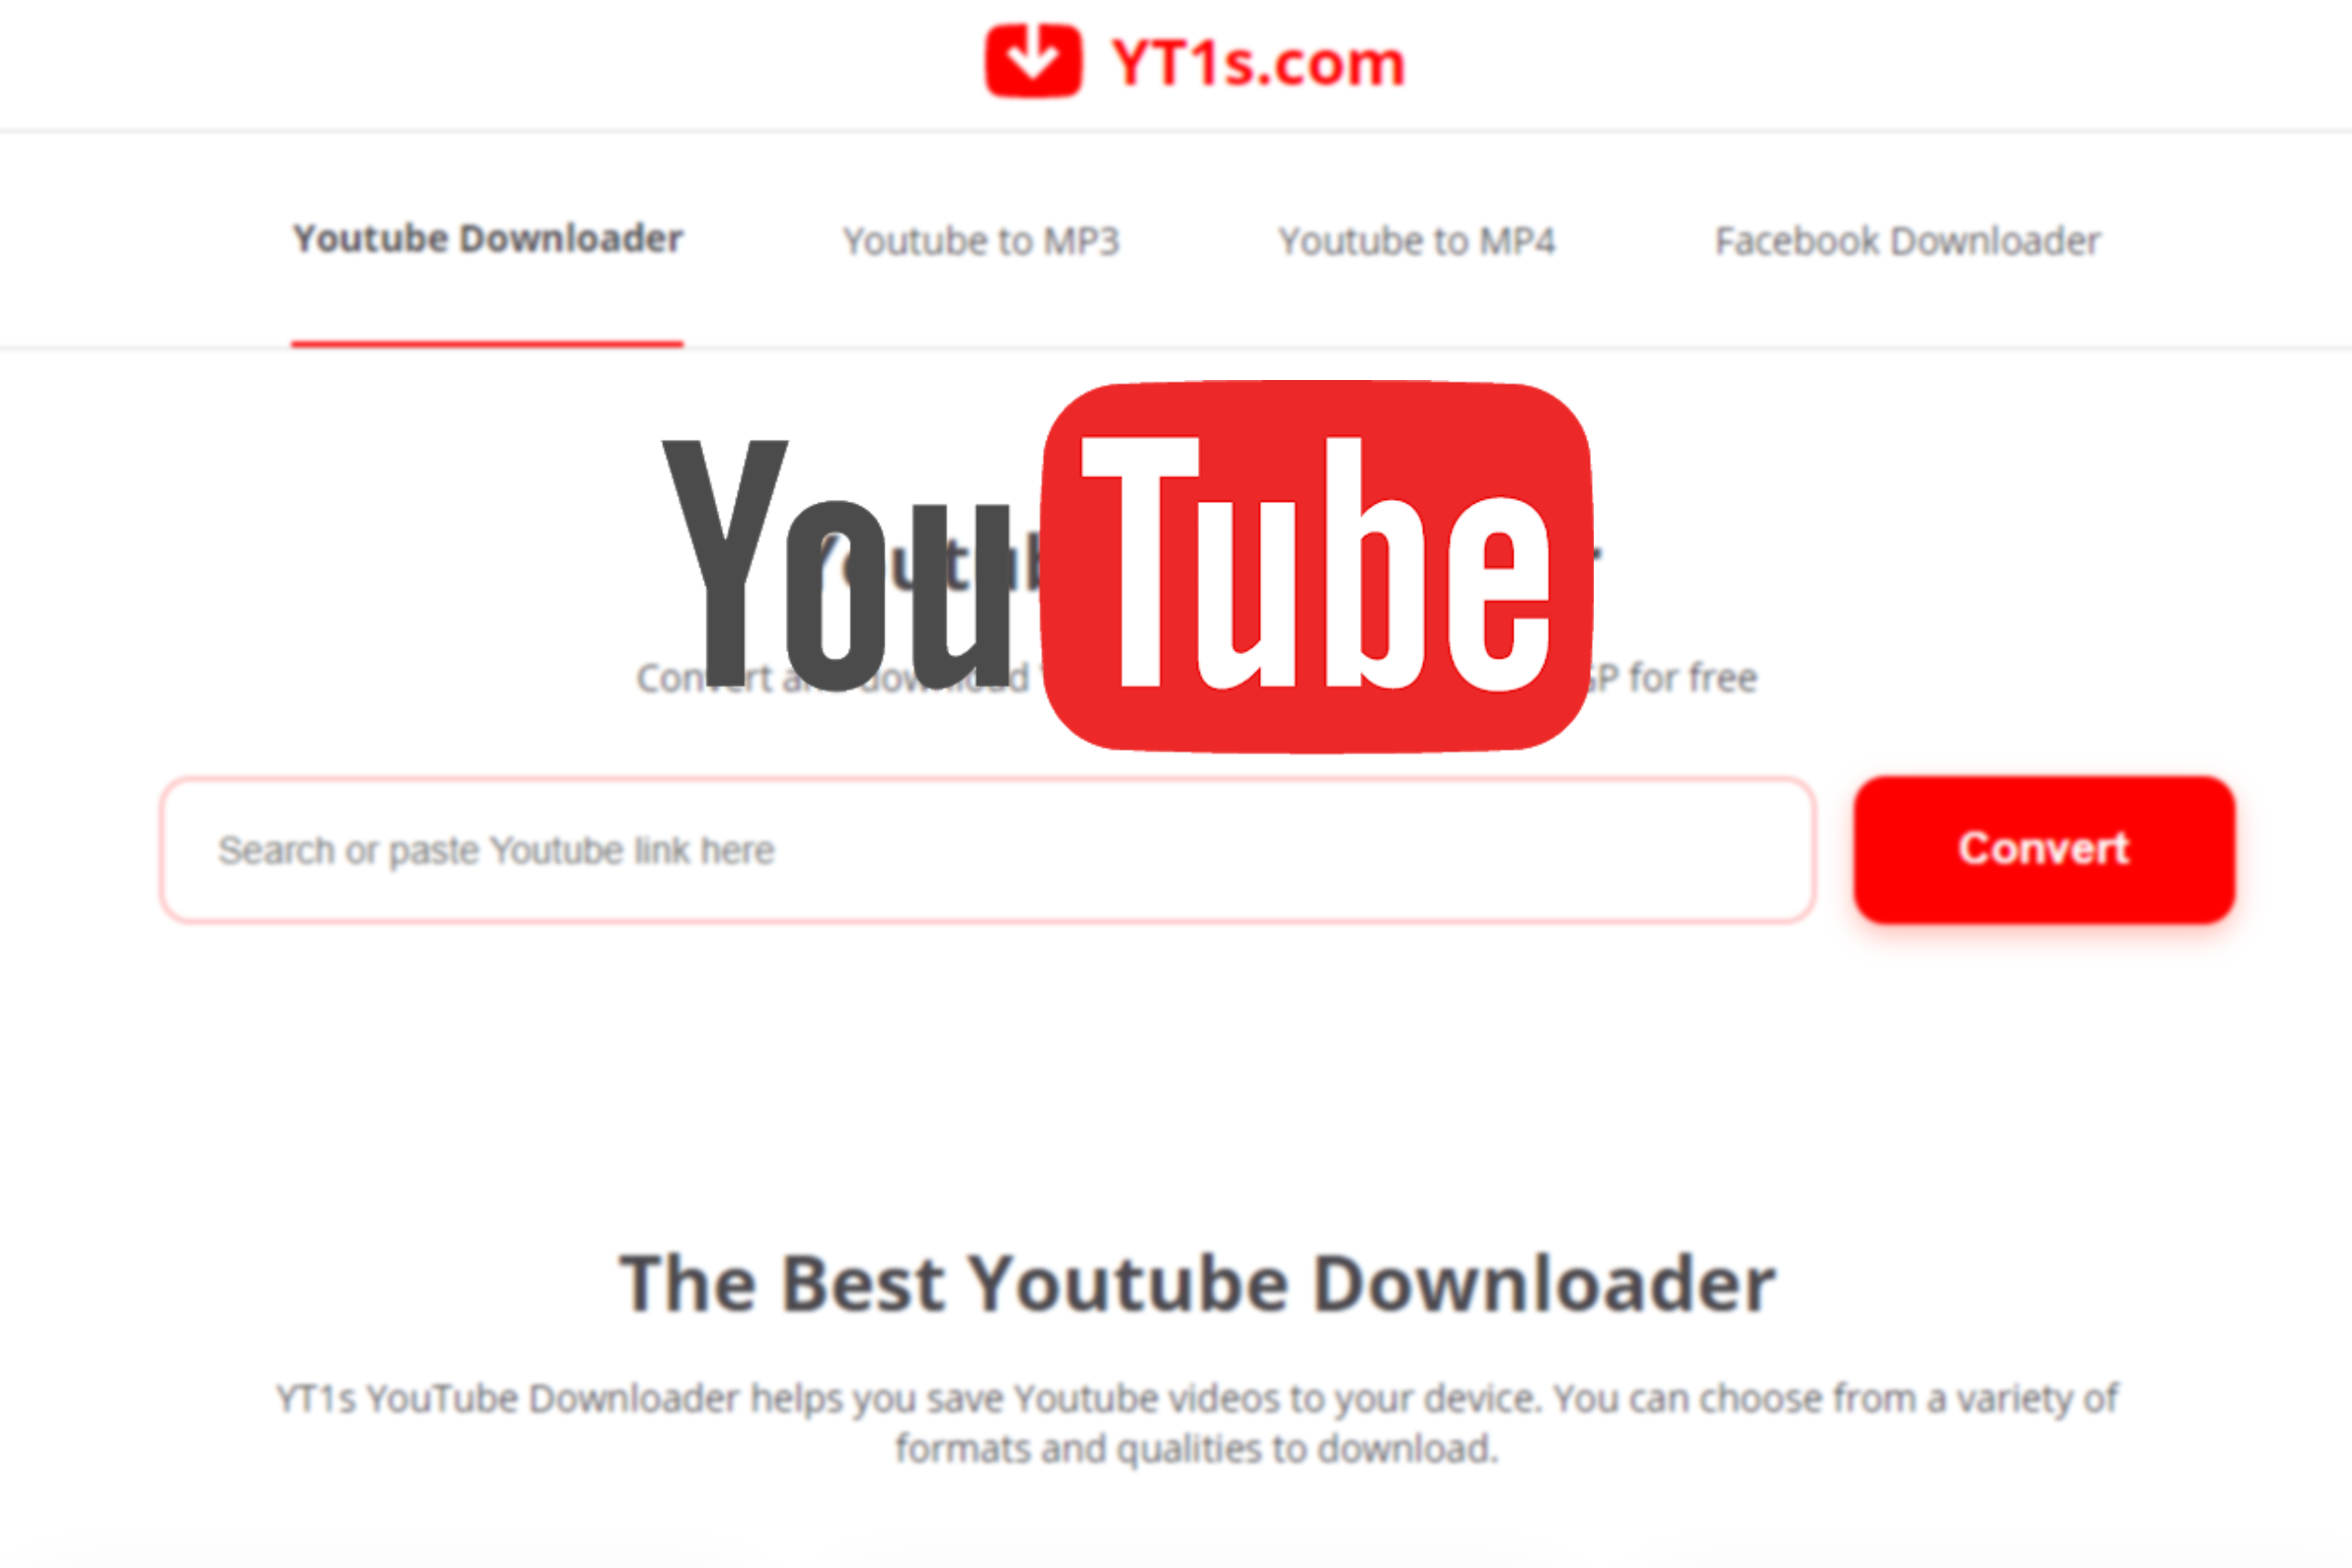 YT1S Downloader: